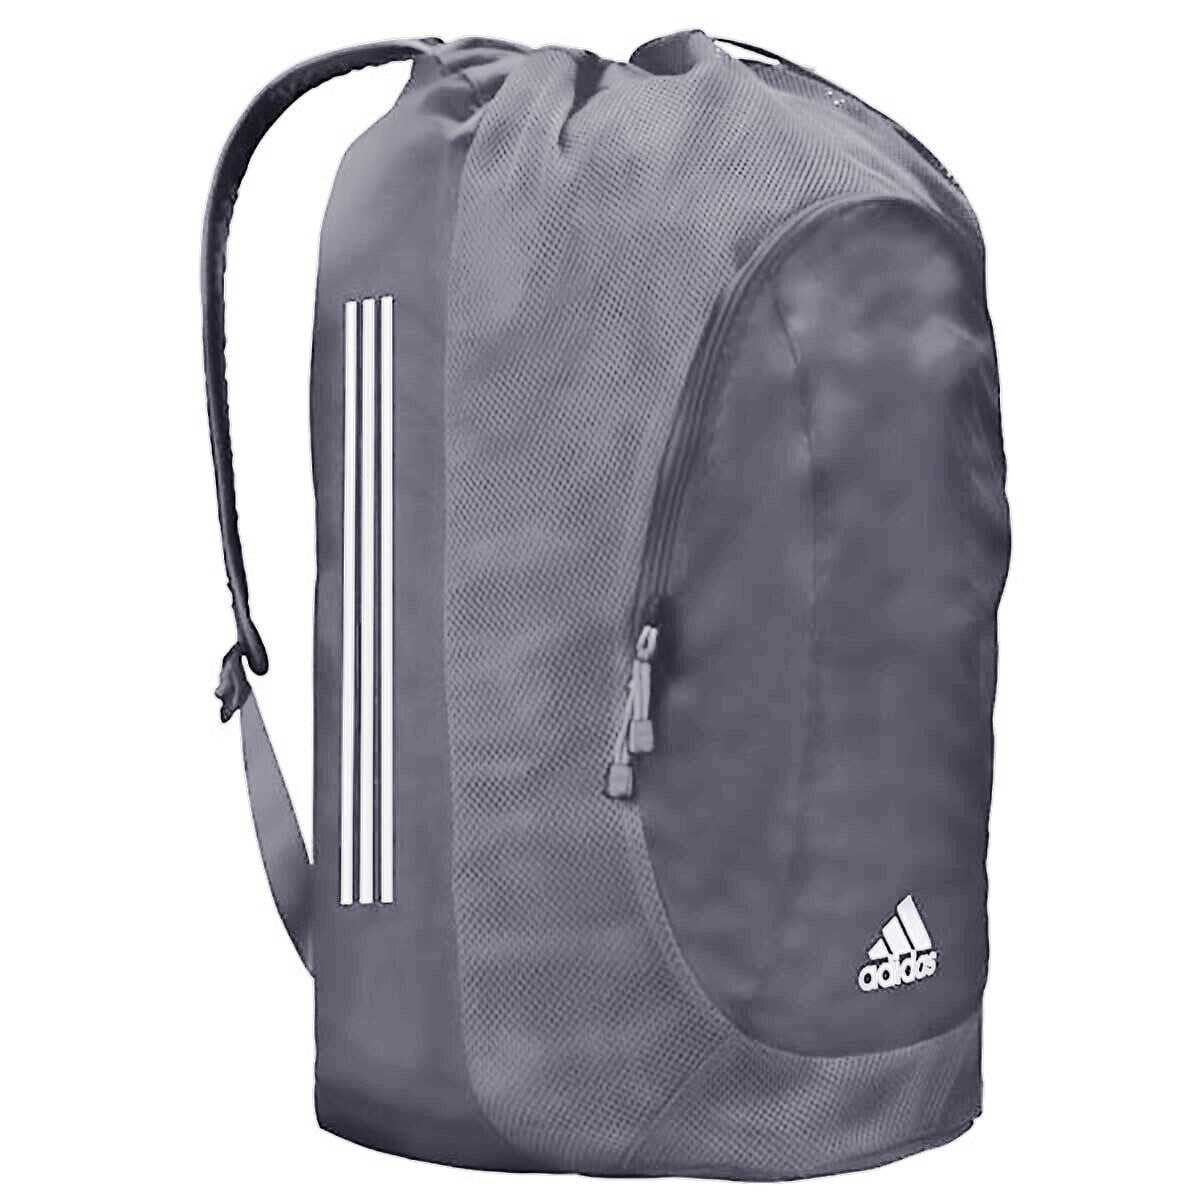 Adidas Adult Youth Wrestling Gear Bag 